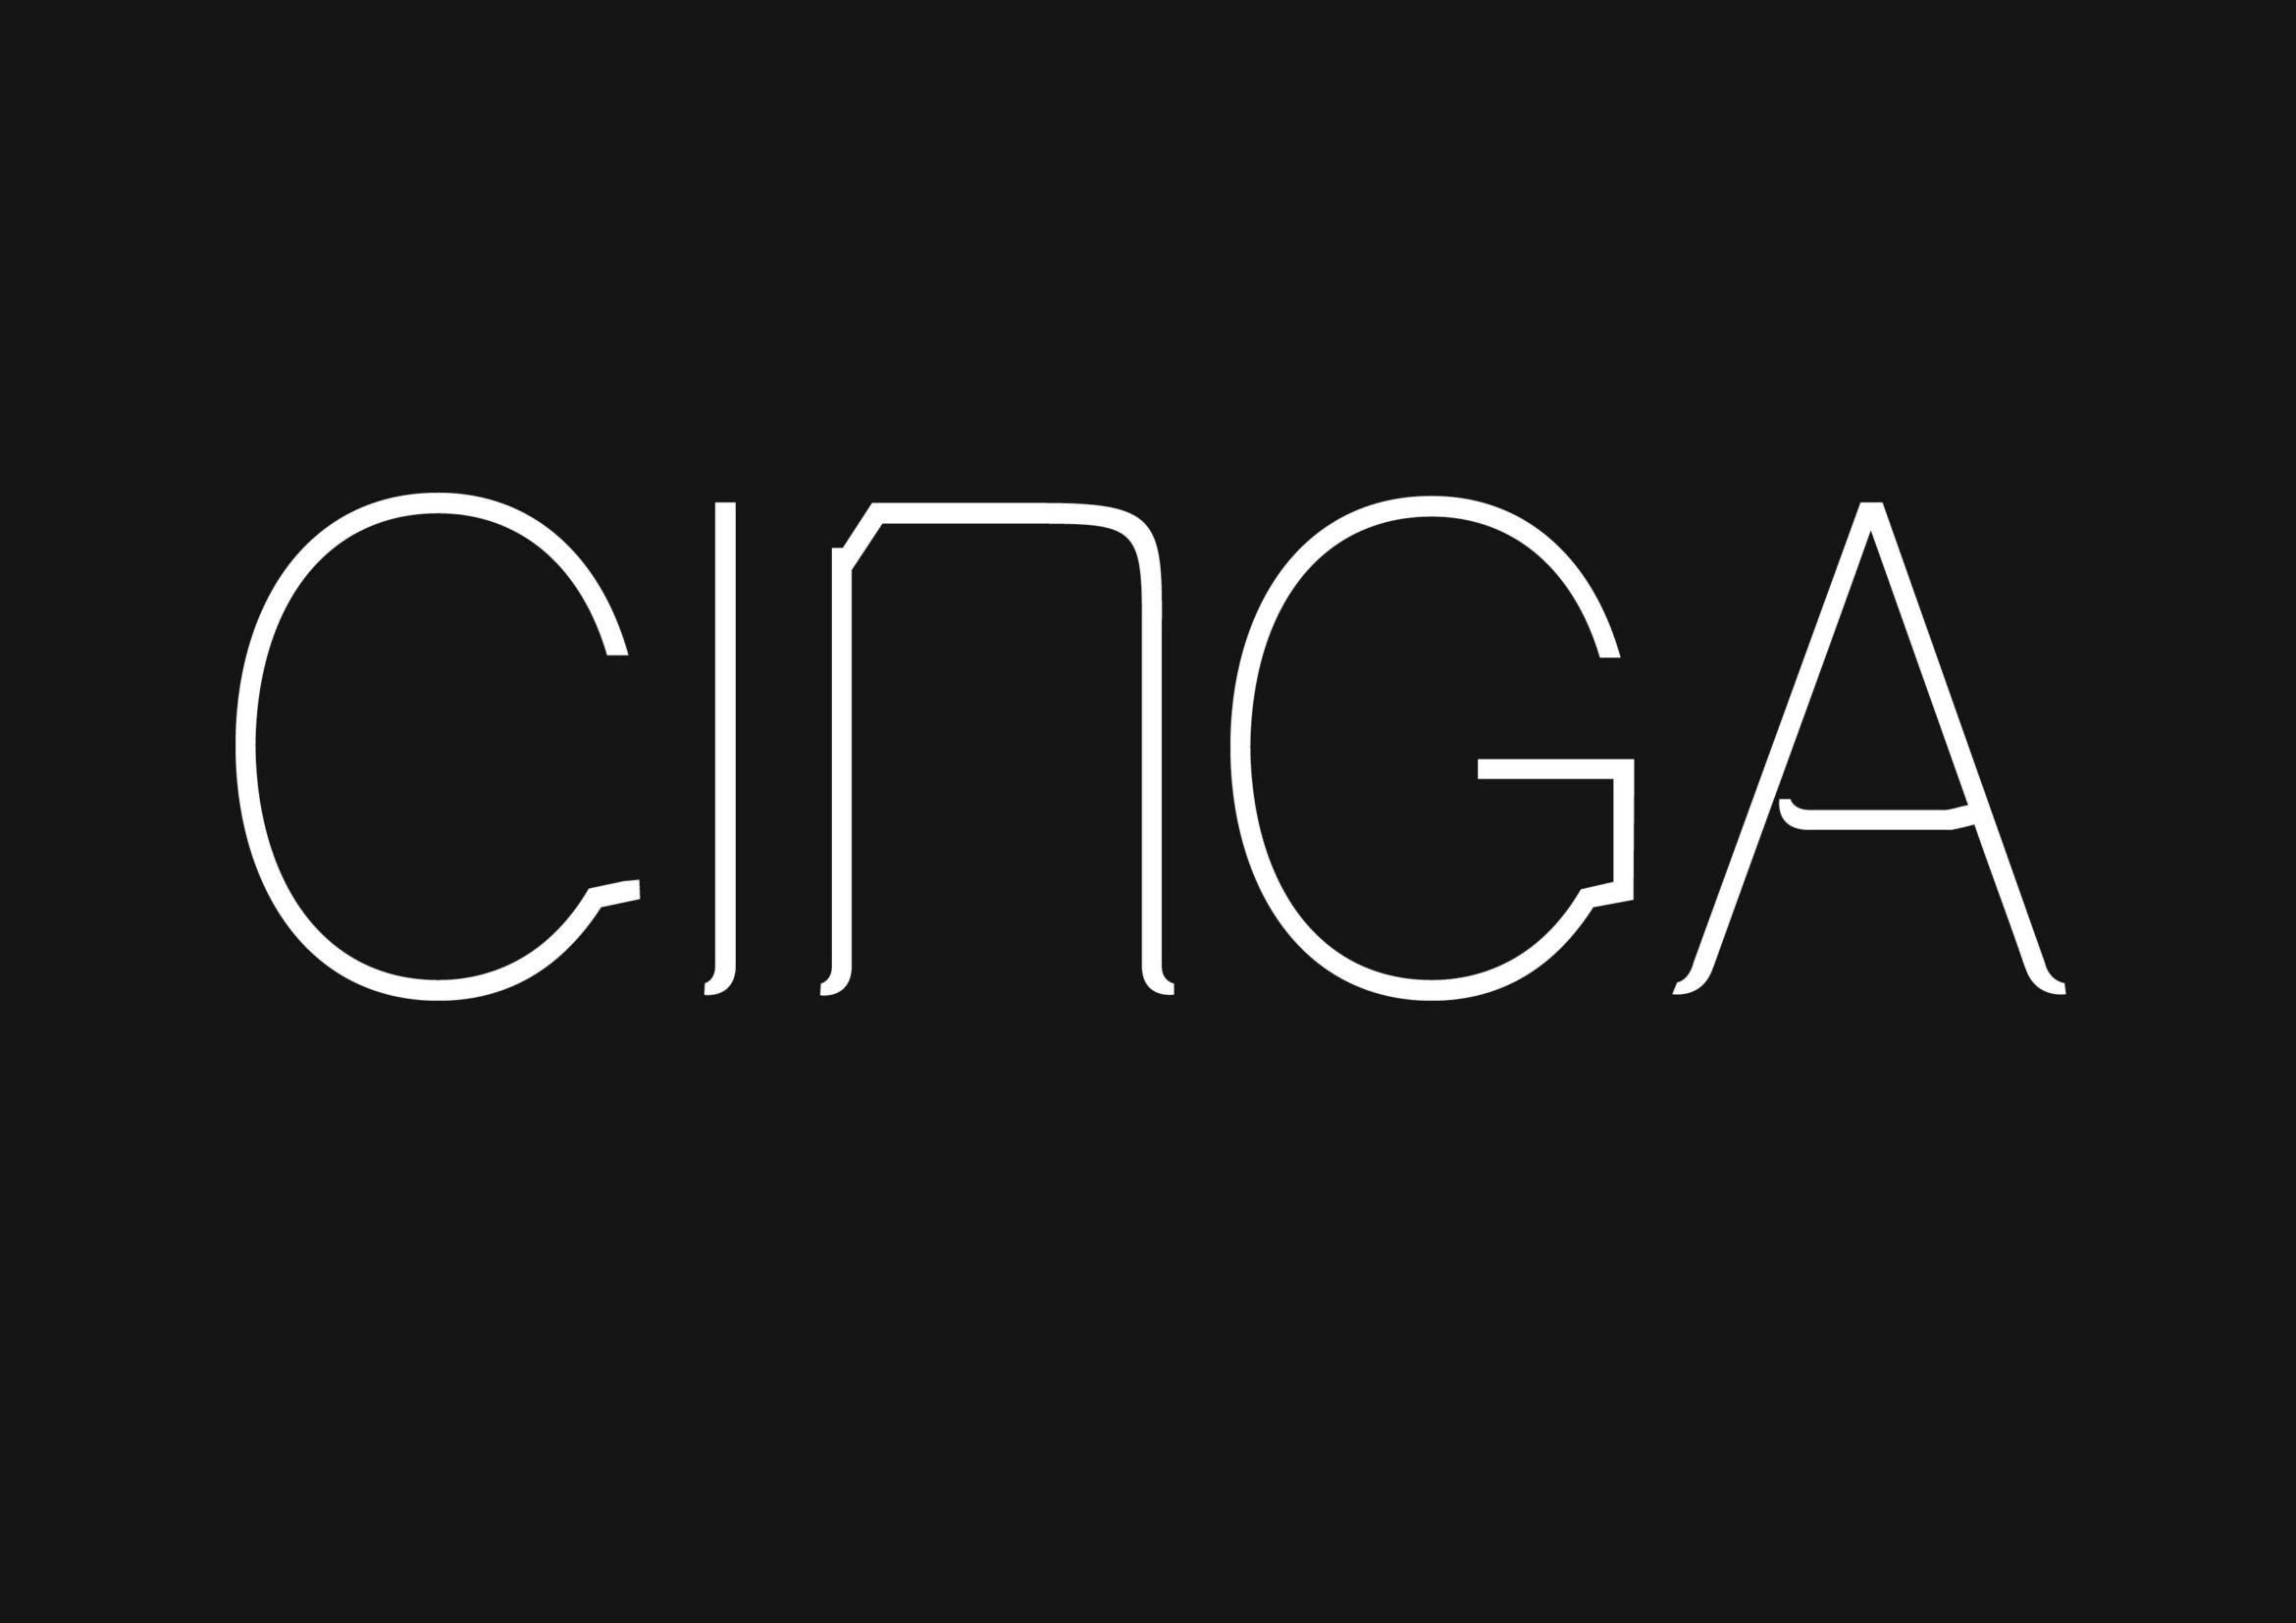 Cinga | Schriftgestaltung | Typografie | Mikrotypografie